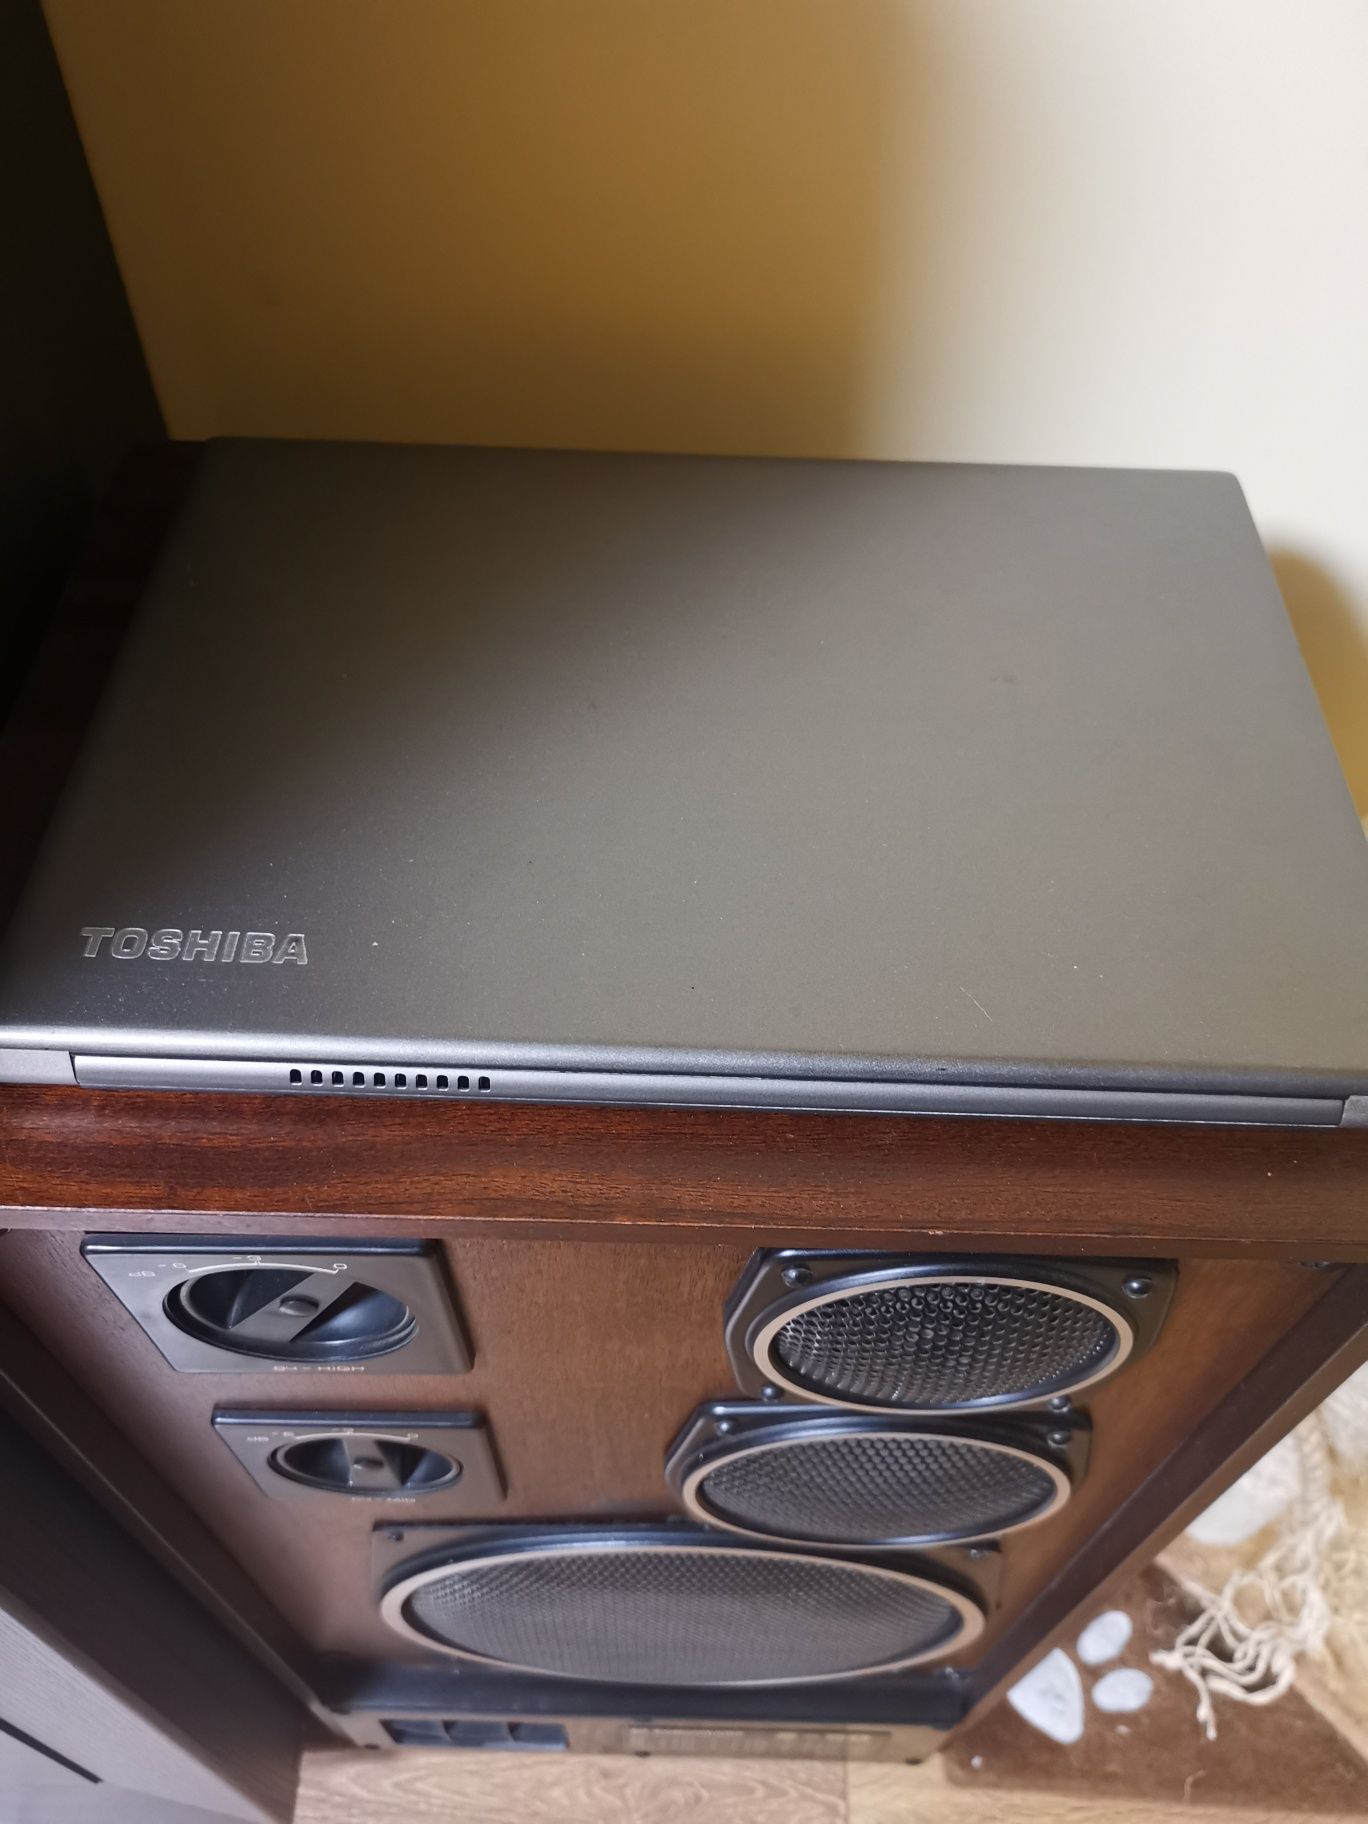 Toshiba Portege Z30